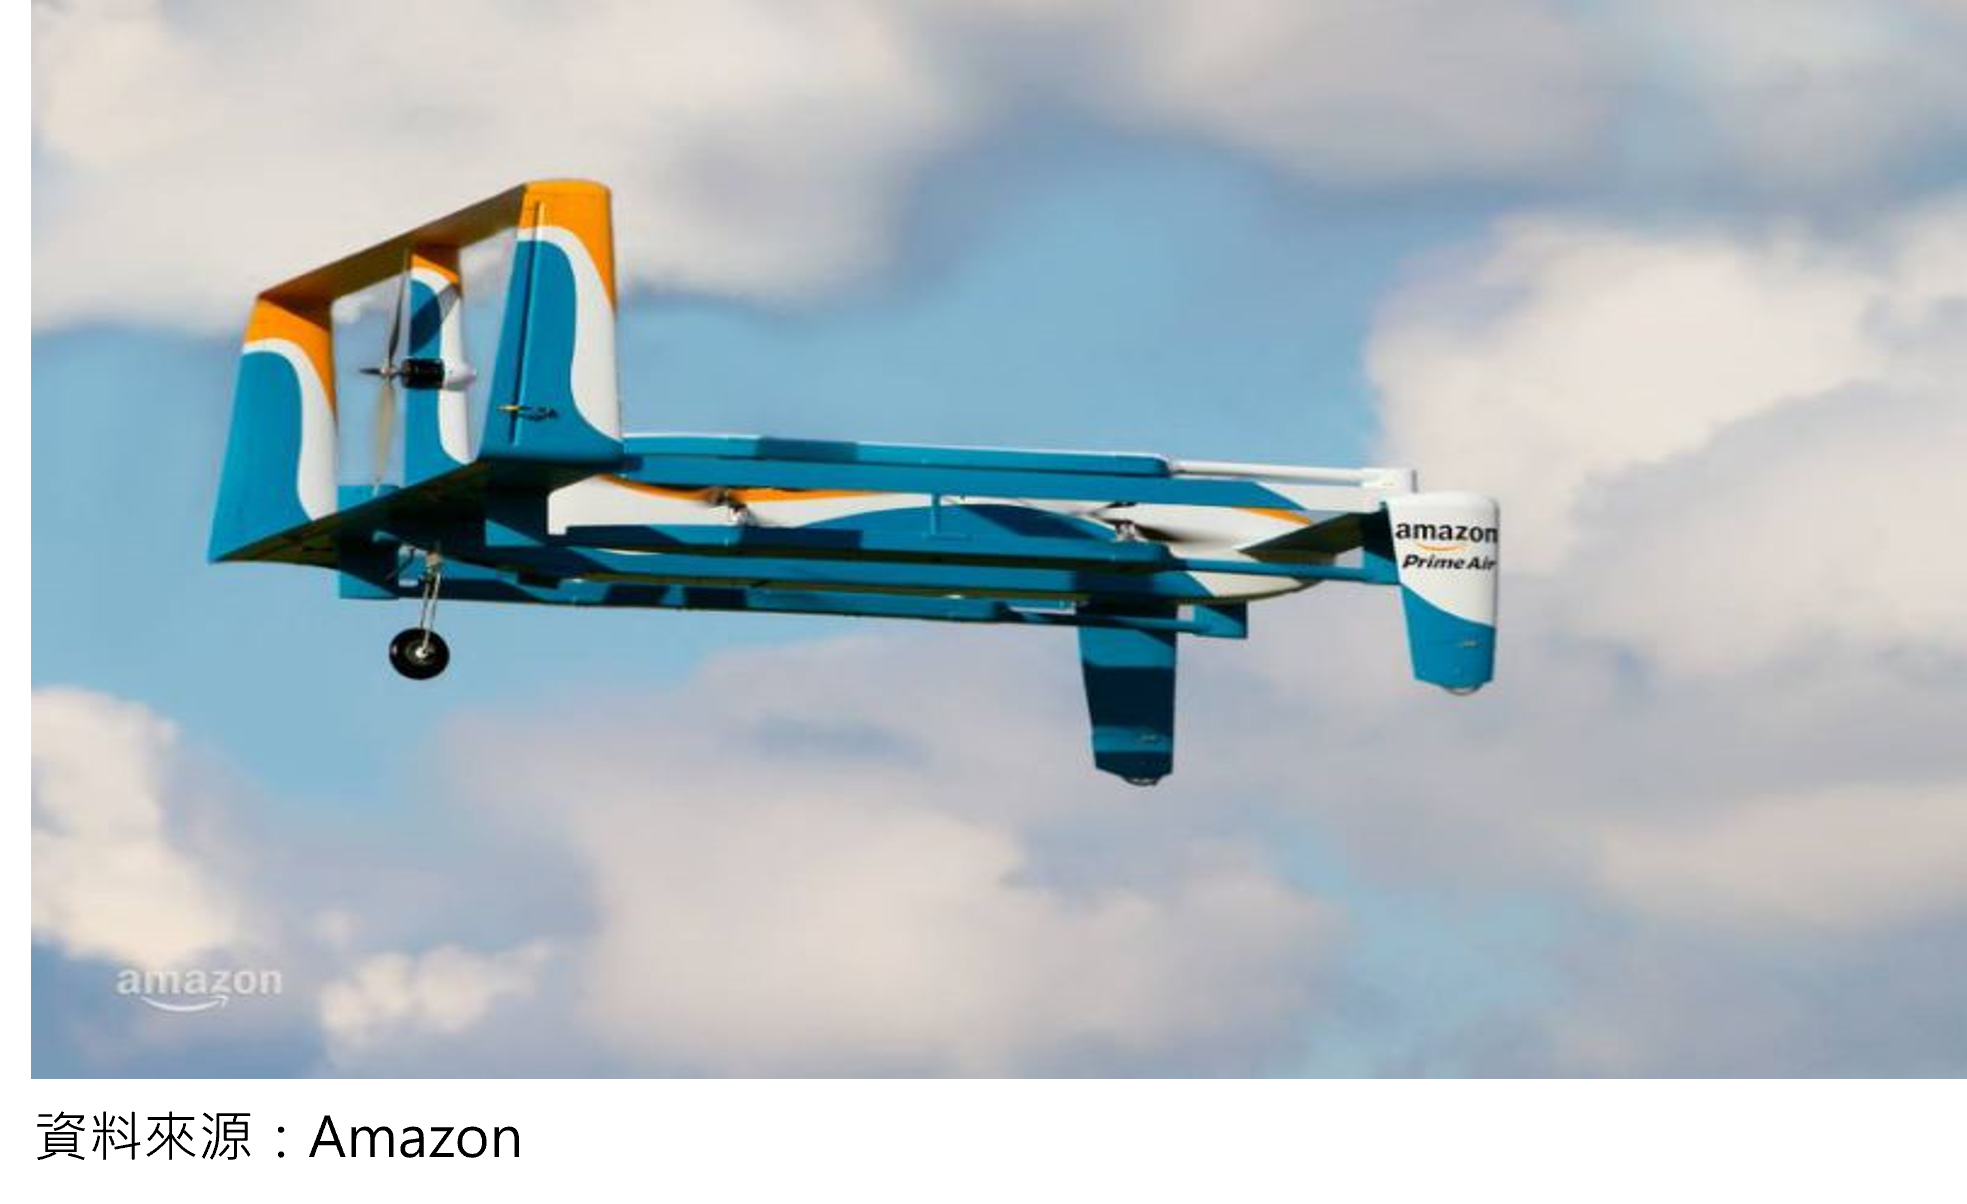 06智慧無人機 Amazon發展無人機物流配送